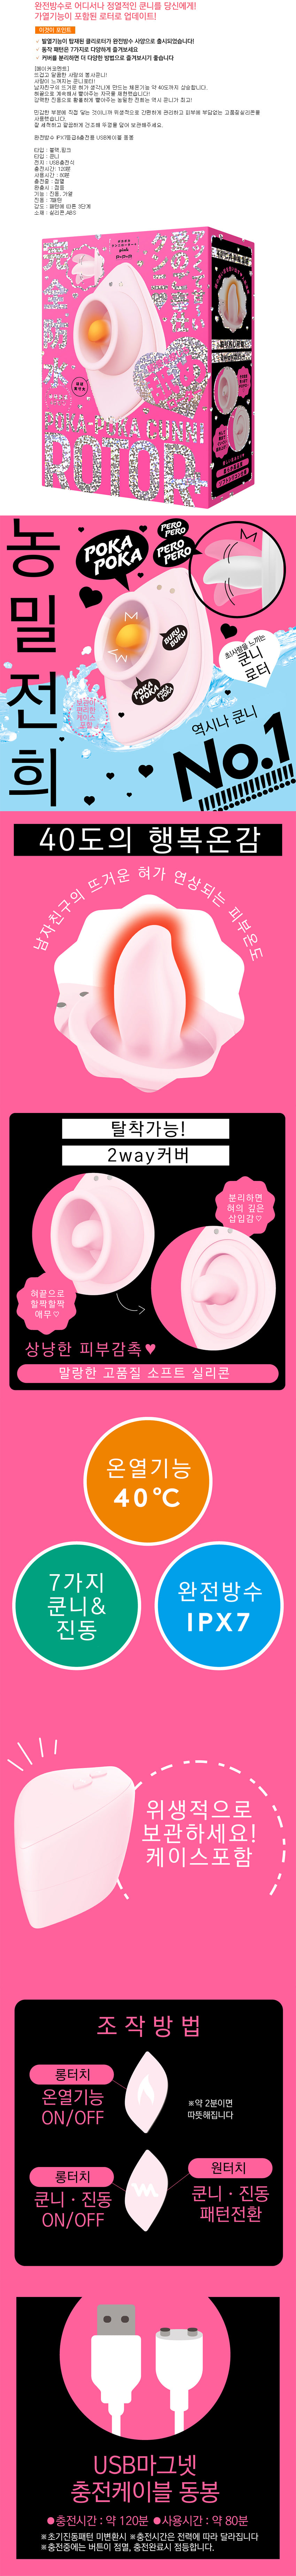 완전방수 행복온감 40도 따끈따끈 쿤니 로터 핑크 (일본정품)